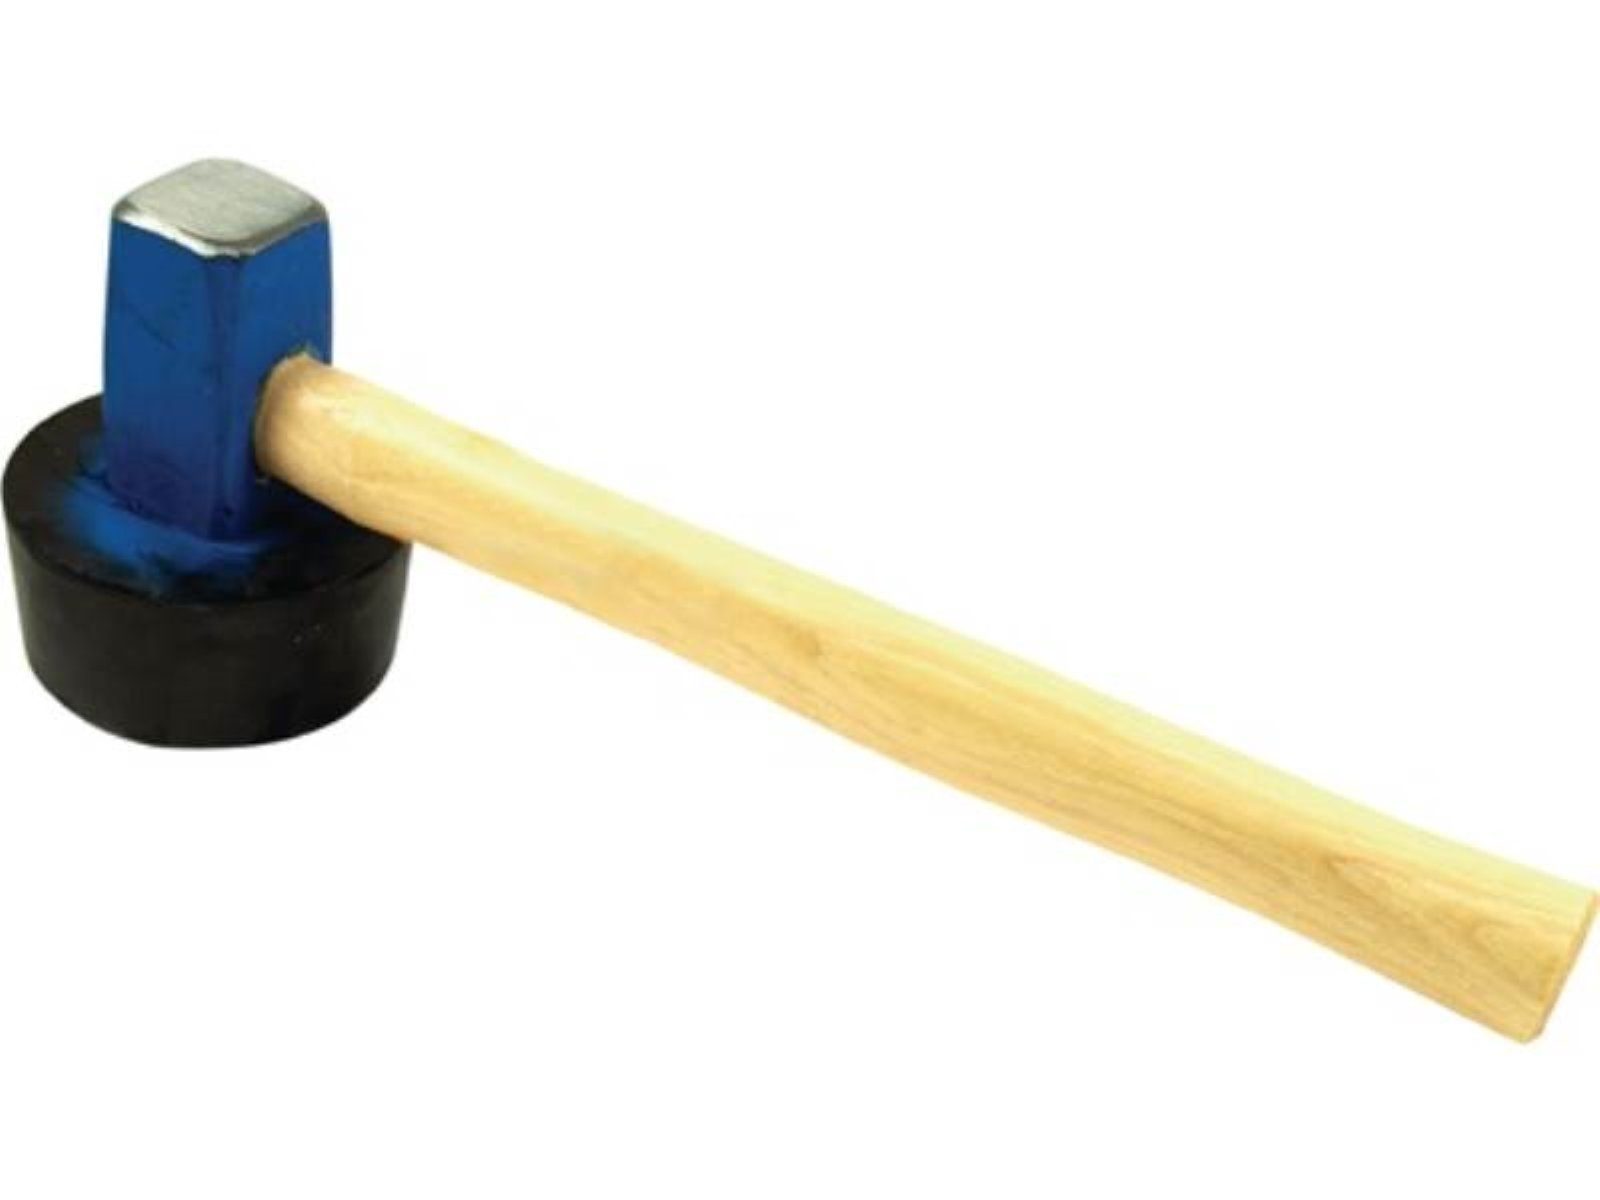 PROMAT Hammer Plattenlegerhammer 1500g rd.(anvulkanisiert) mit anvulkanisierten Gumm